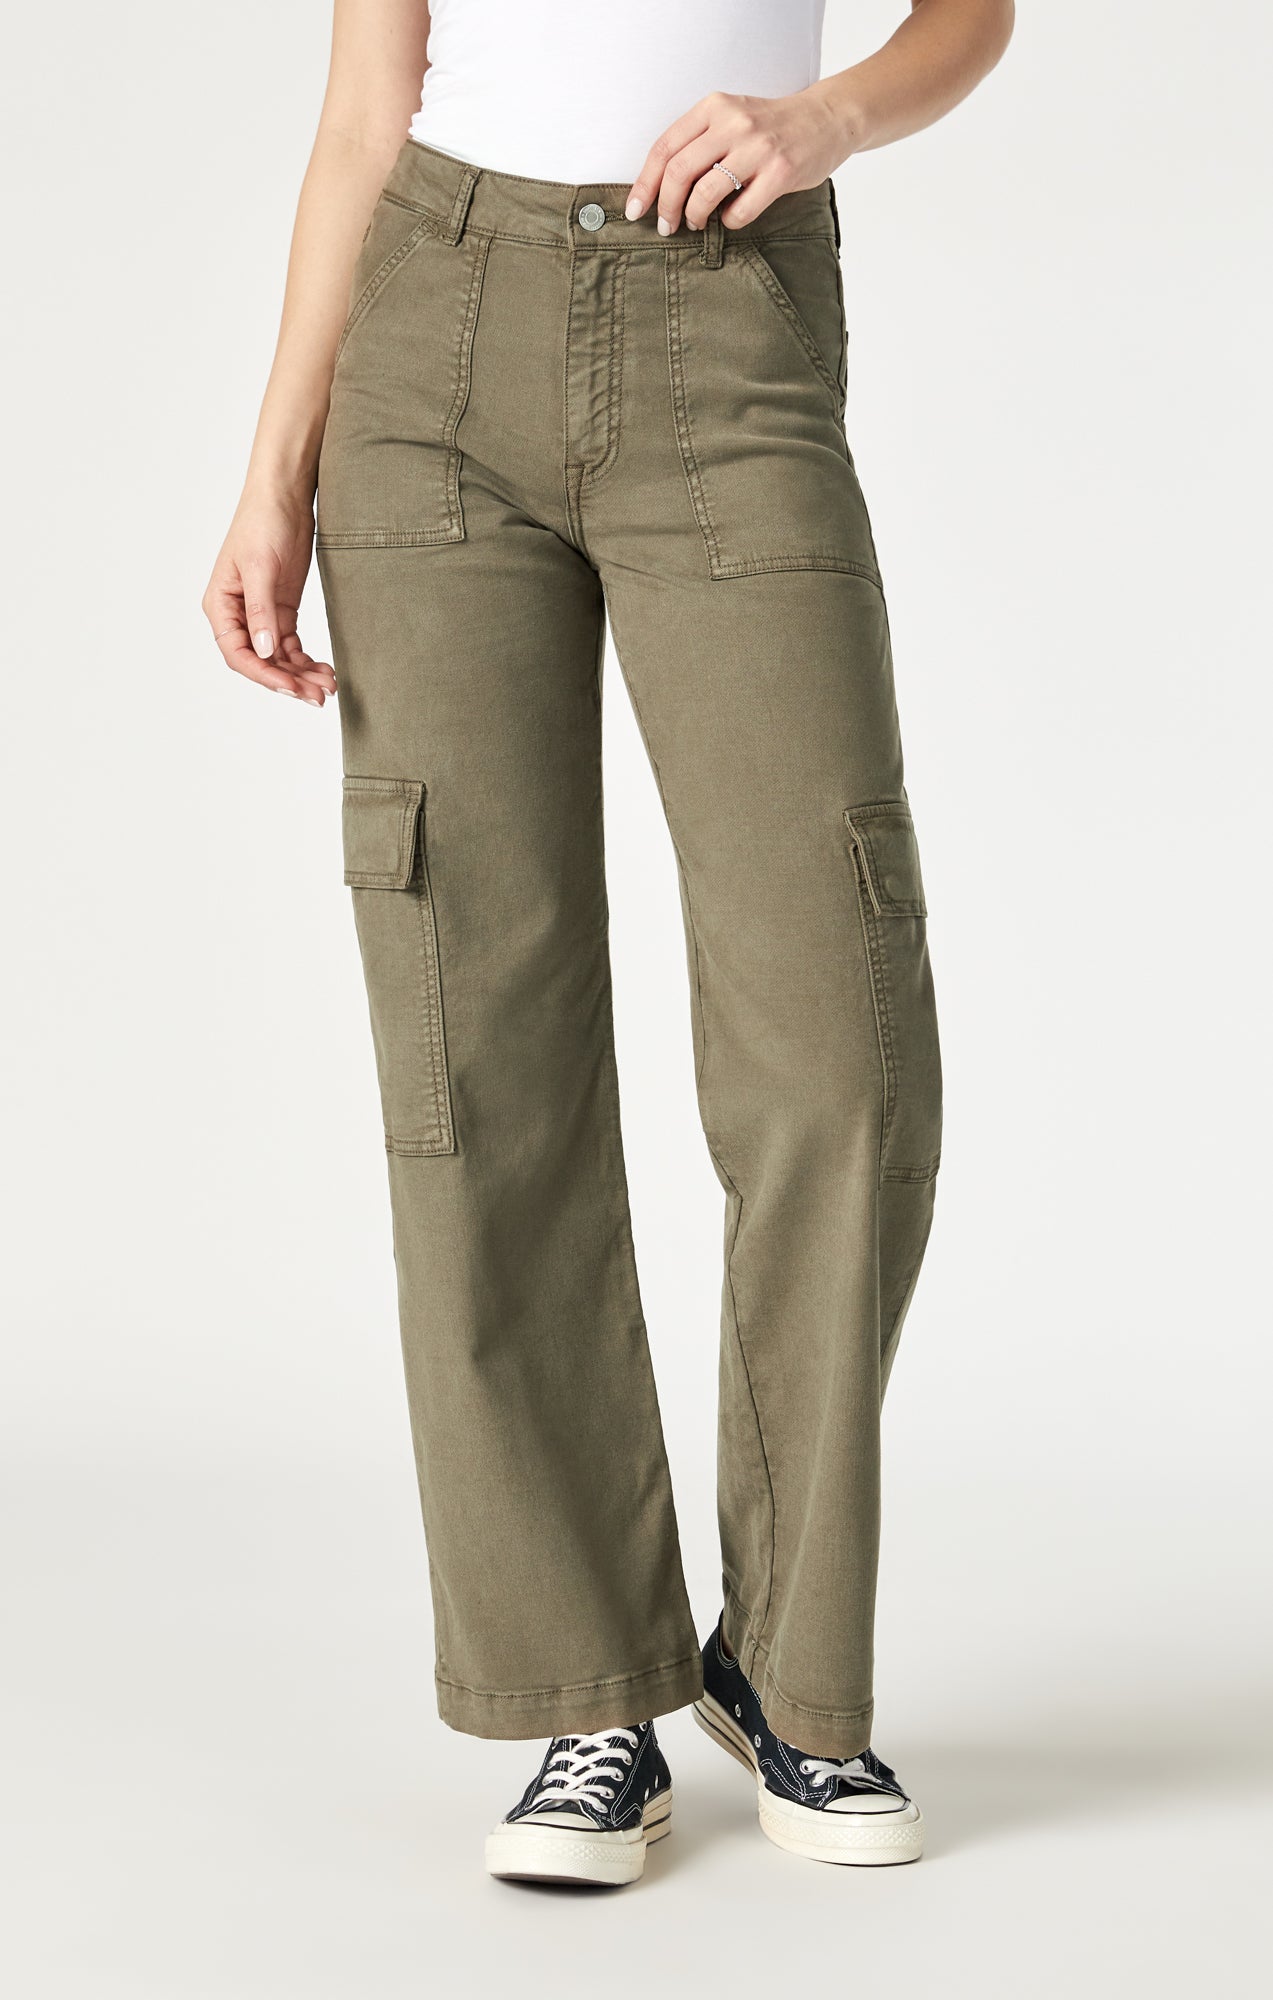 fvwitlyh Pants for Women Falls Creek Pants Gradient Plus Size Regular Women Waist  Mid Pants Long Denim Jeans Slim Plus Size Pants New Cargo Pants Women 